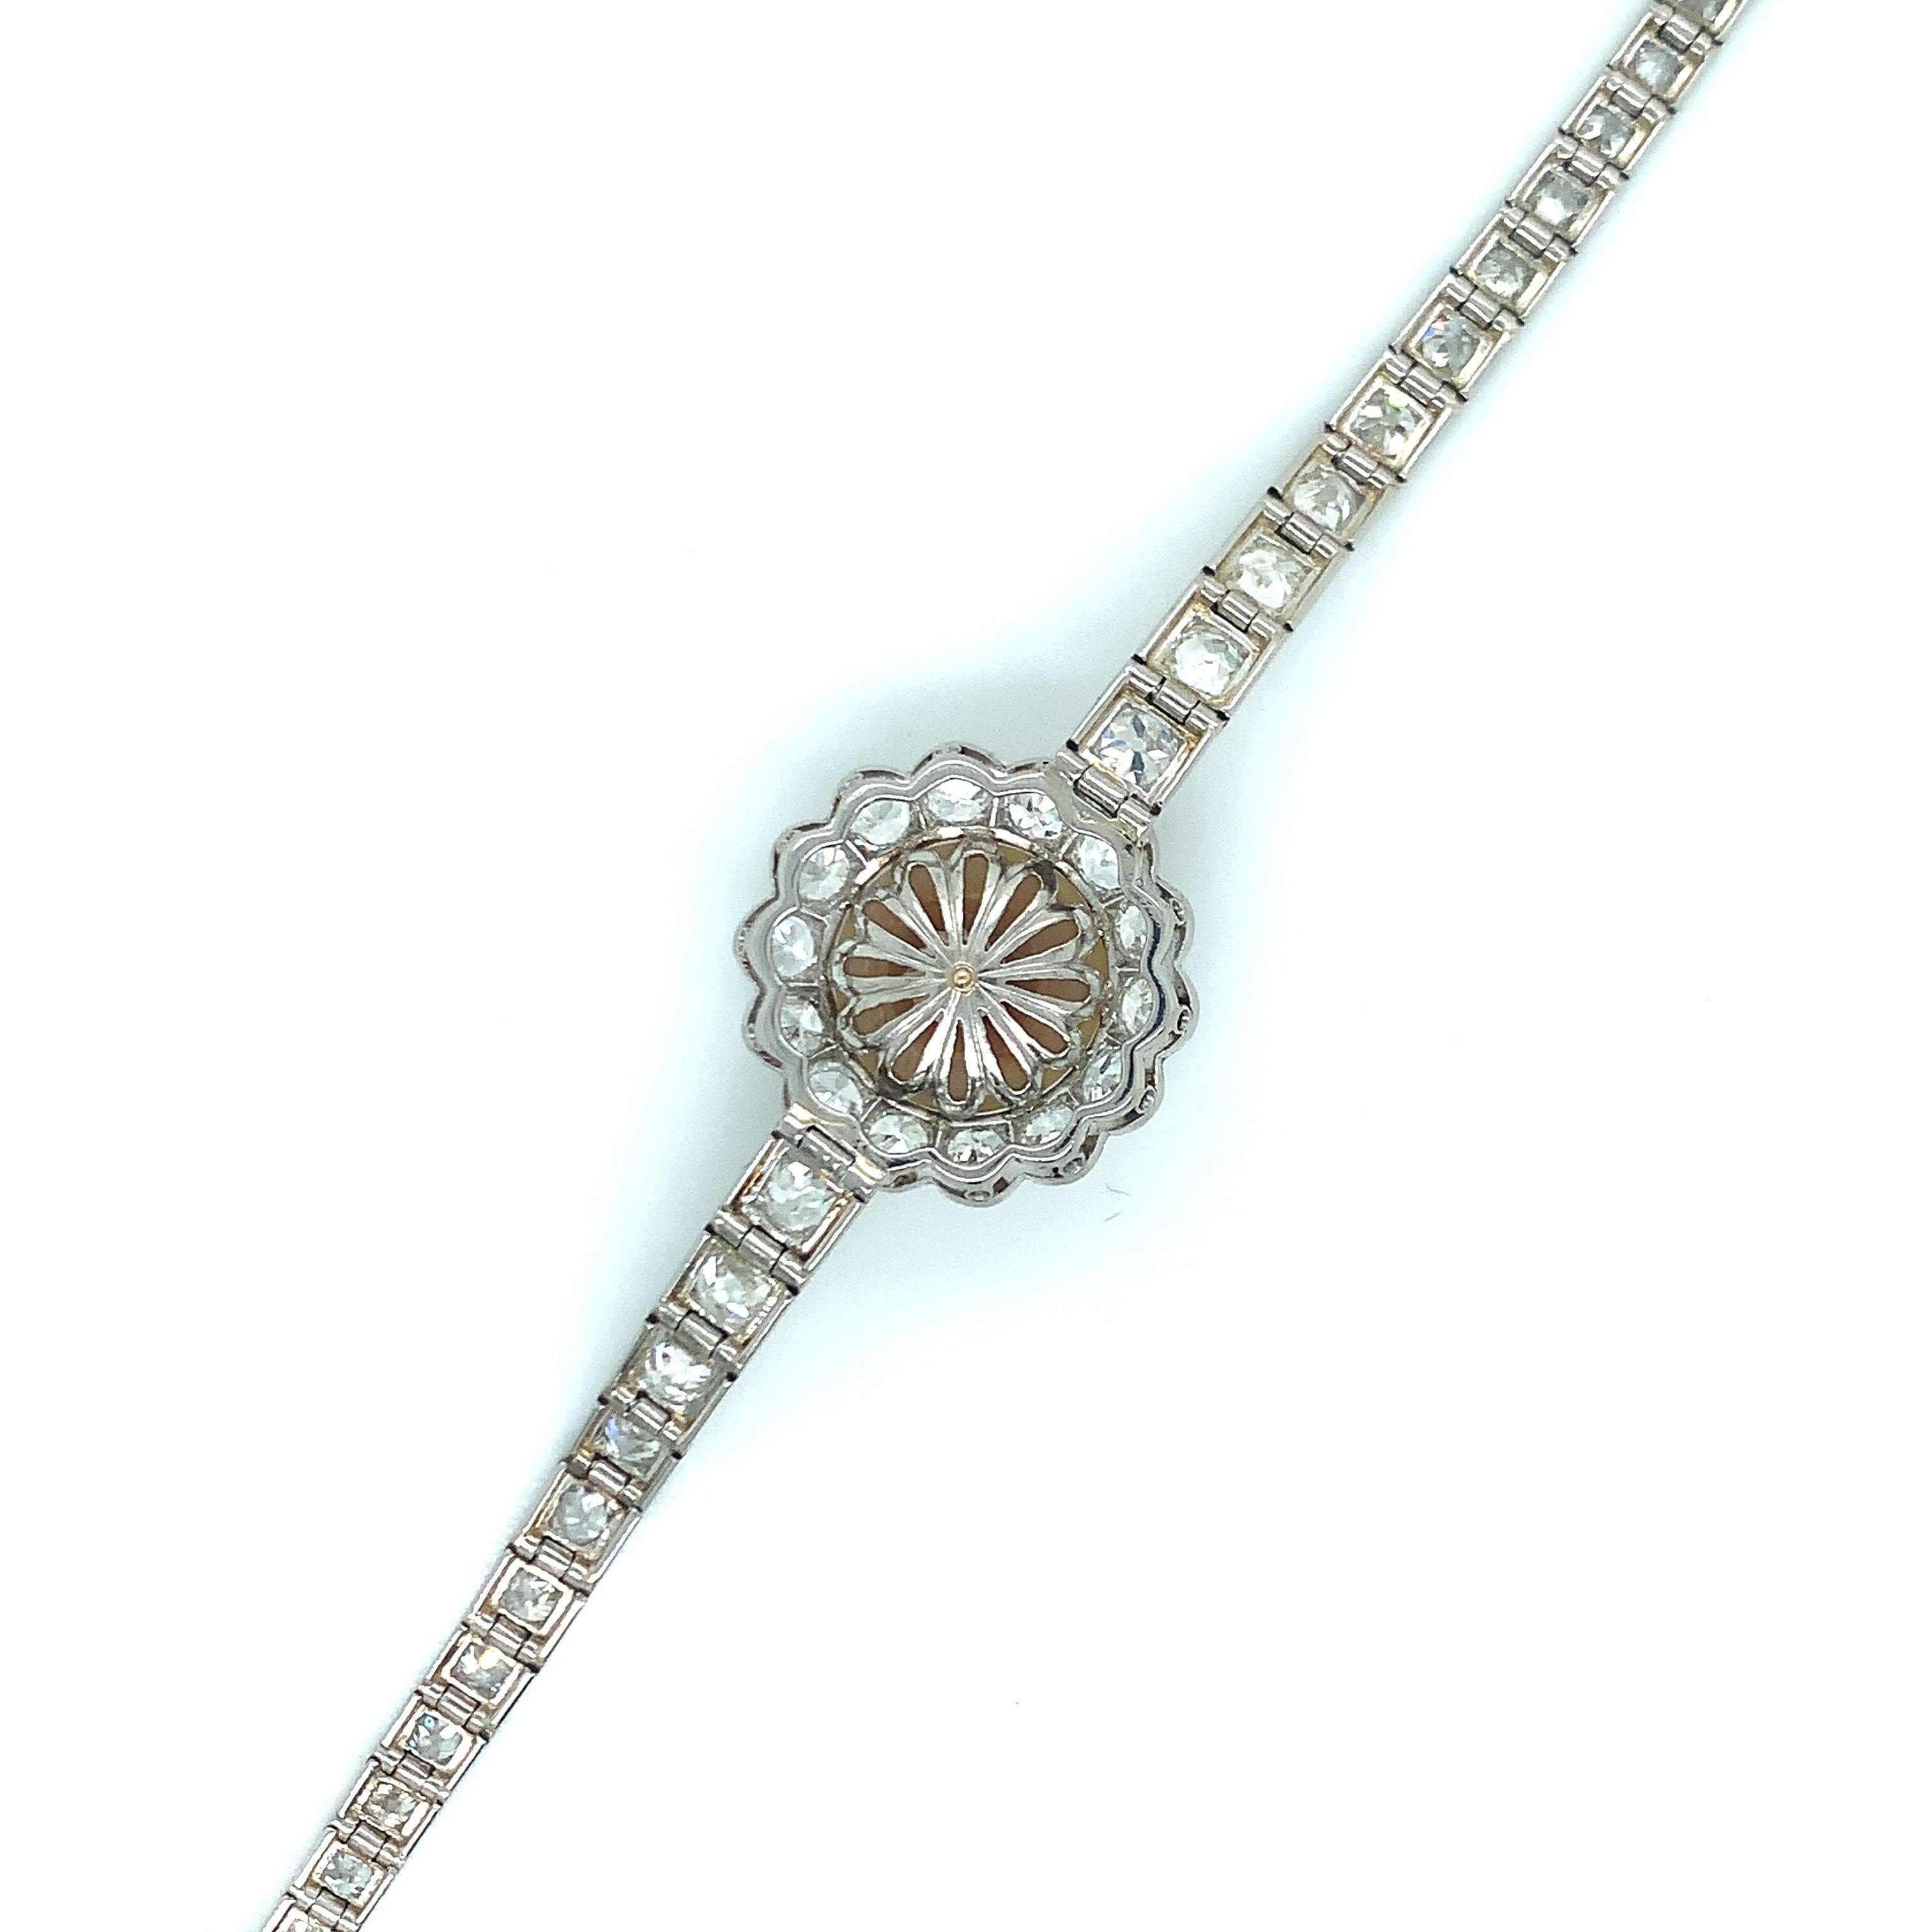 De style art déco, ce bracelet est orné d'une perle en son centre et de diamants. Sertis en platine, les diamants pèsent environ 6,5-7 carats. Circonférence intérieure : 7 pouces. Poids total : 22,6 grammes. 